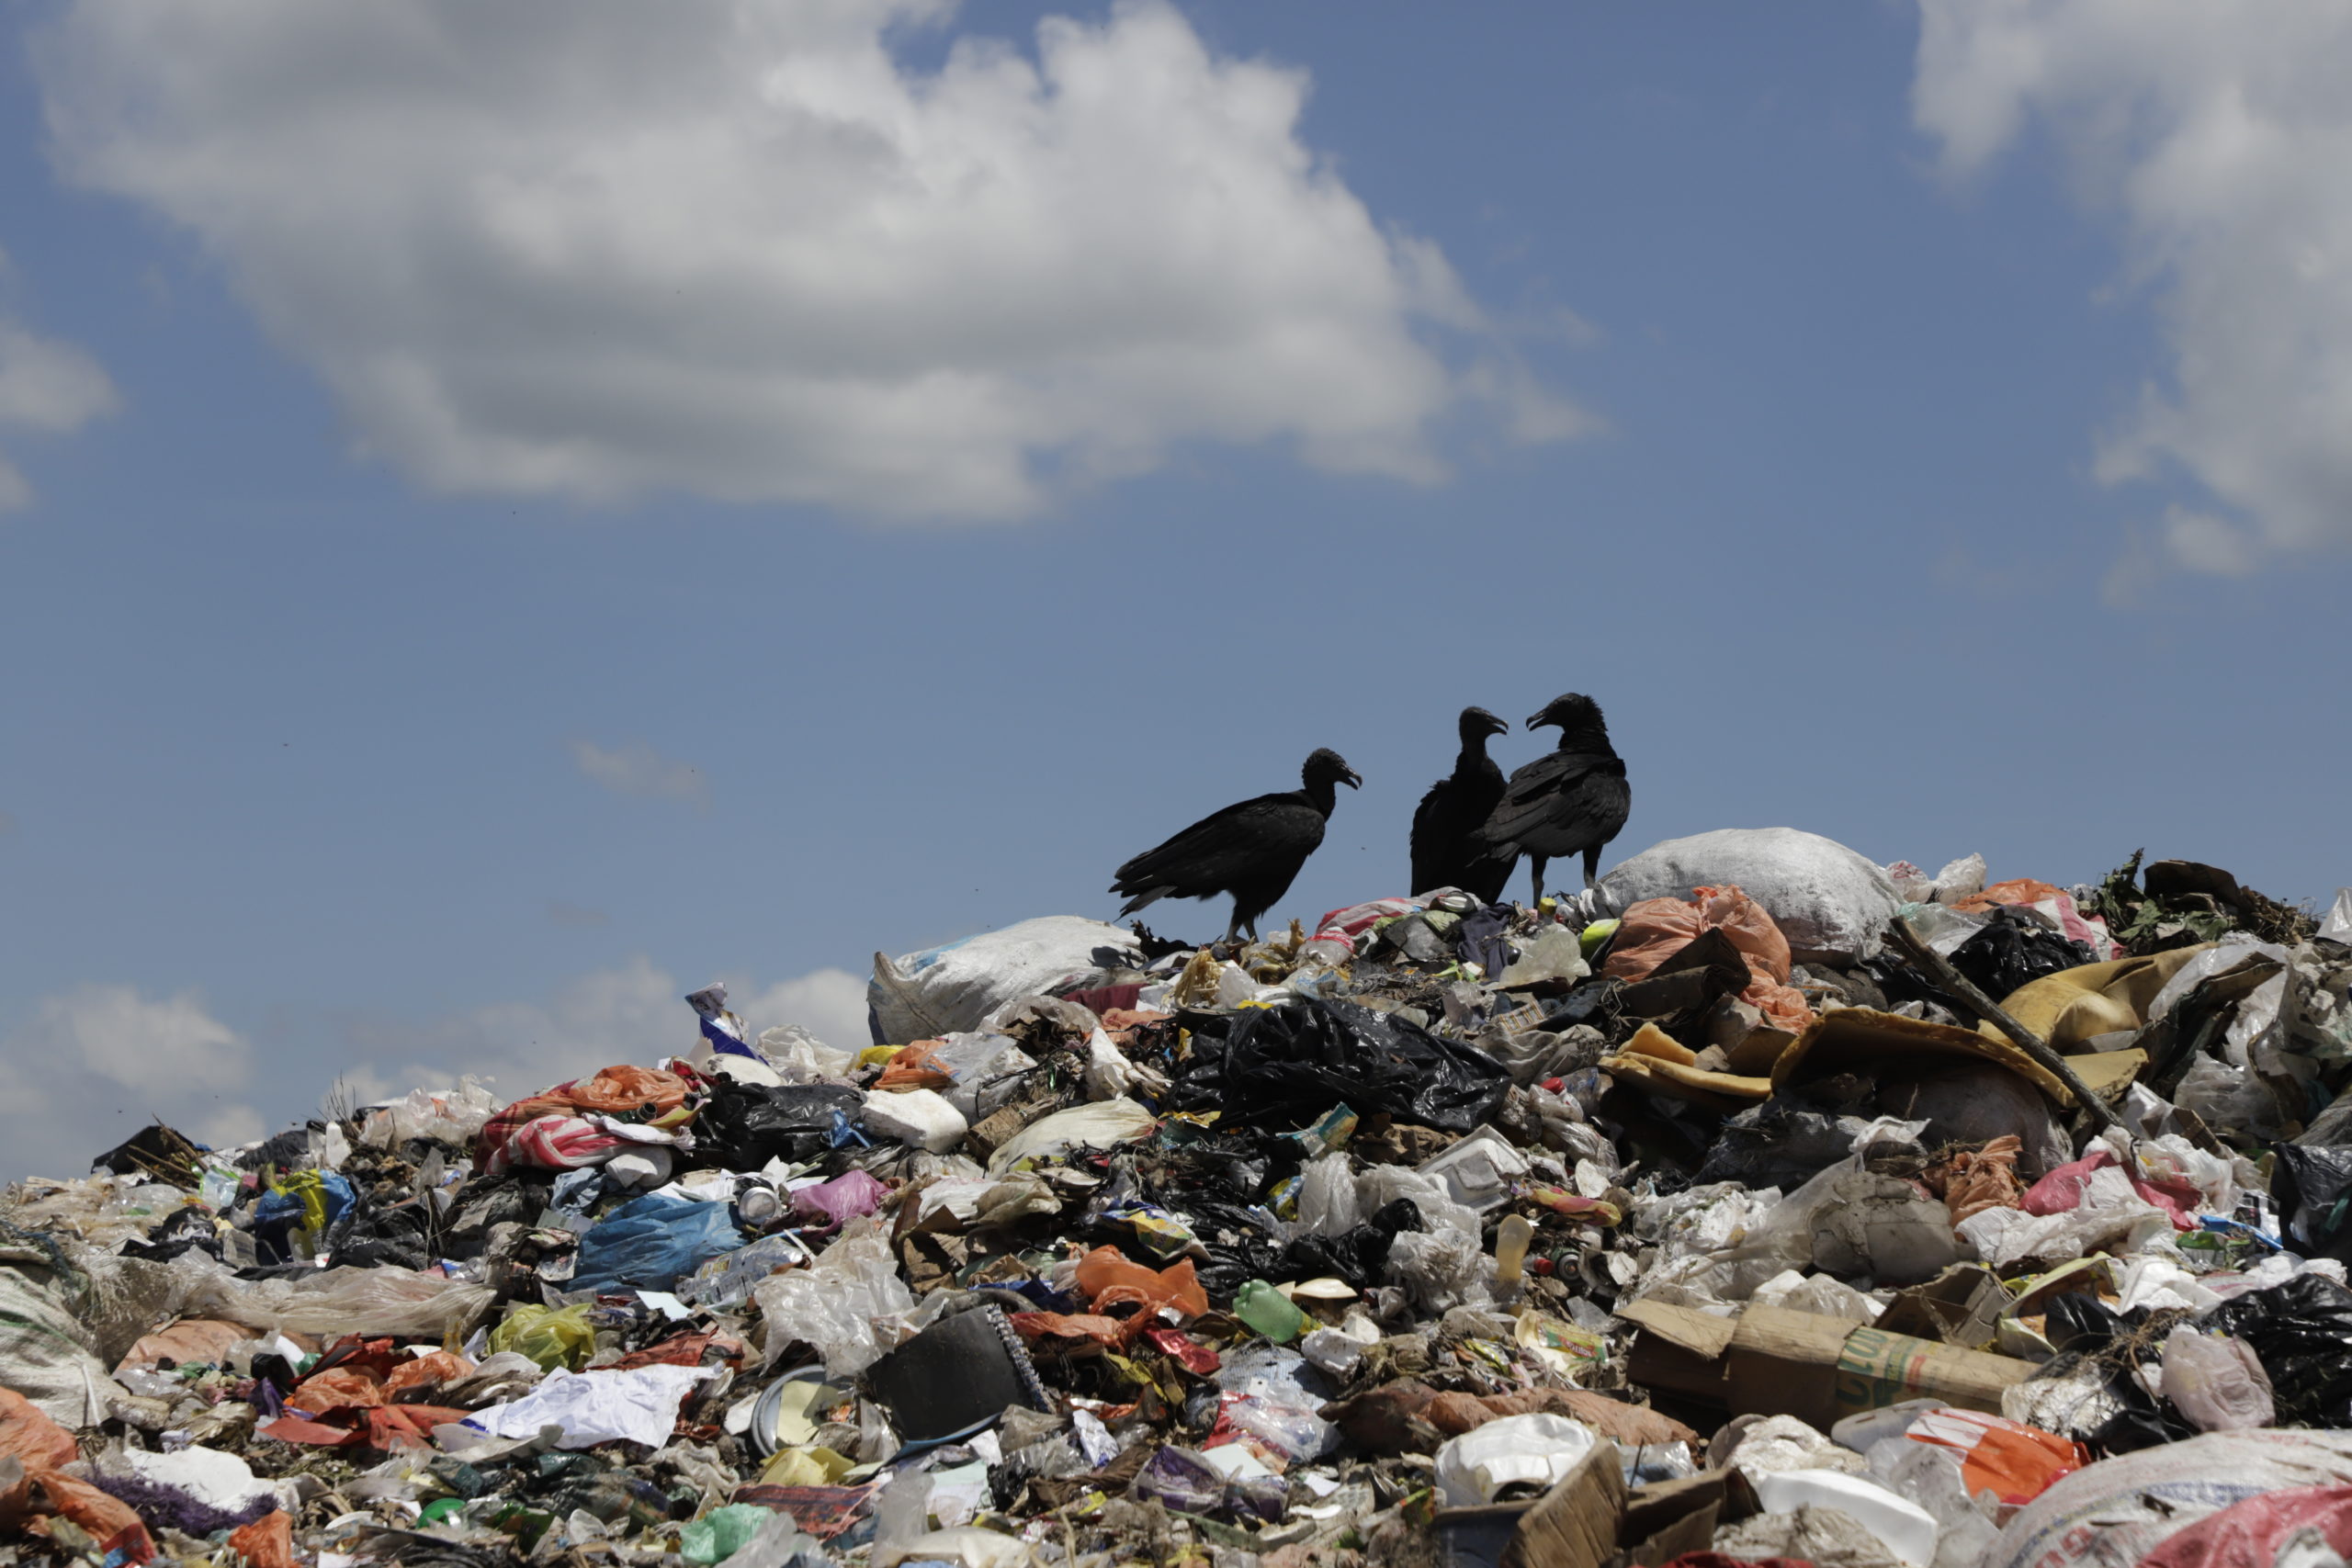 En el botadero de basura de Villanueva Cortés, las aves de rapiña  buscan algún animal muerto para alimentarse, sin asustarse por la presencia de los pepenadores, con los que a diario comparten el espacio. Foto CCc/Amílcar Izaguirre